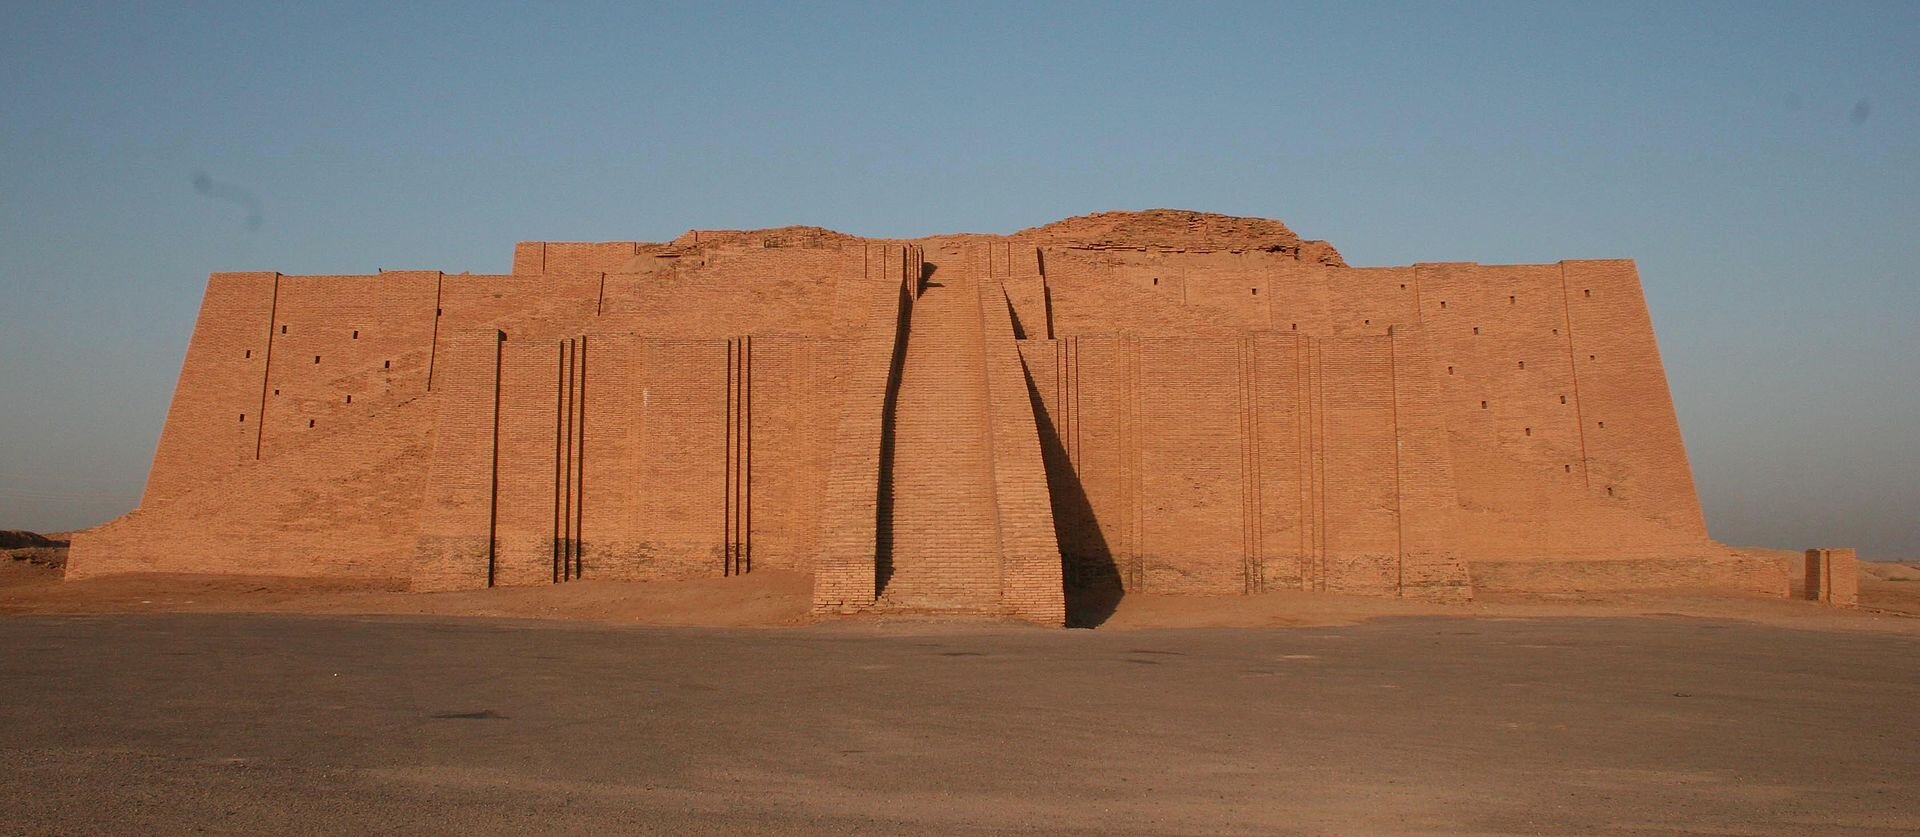 Ilustracja przedstawia zikkurat, monumentalną świątynie z czerwonej cegły o zmniejszających się schodkowo kolejnych tarasach. Na szczyt świątyni prowadzą szerokie schody usytuowane od frontu i po obu stronach.